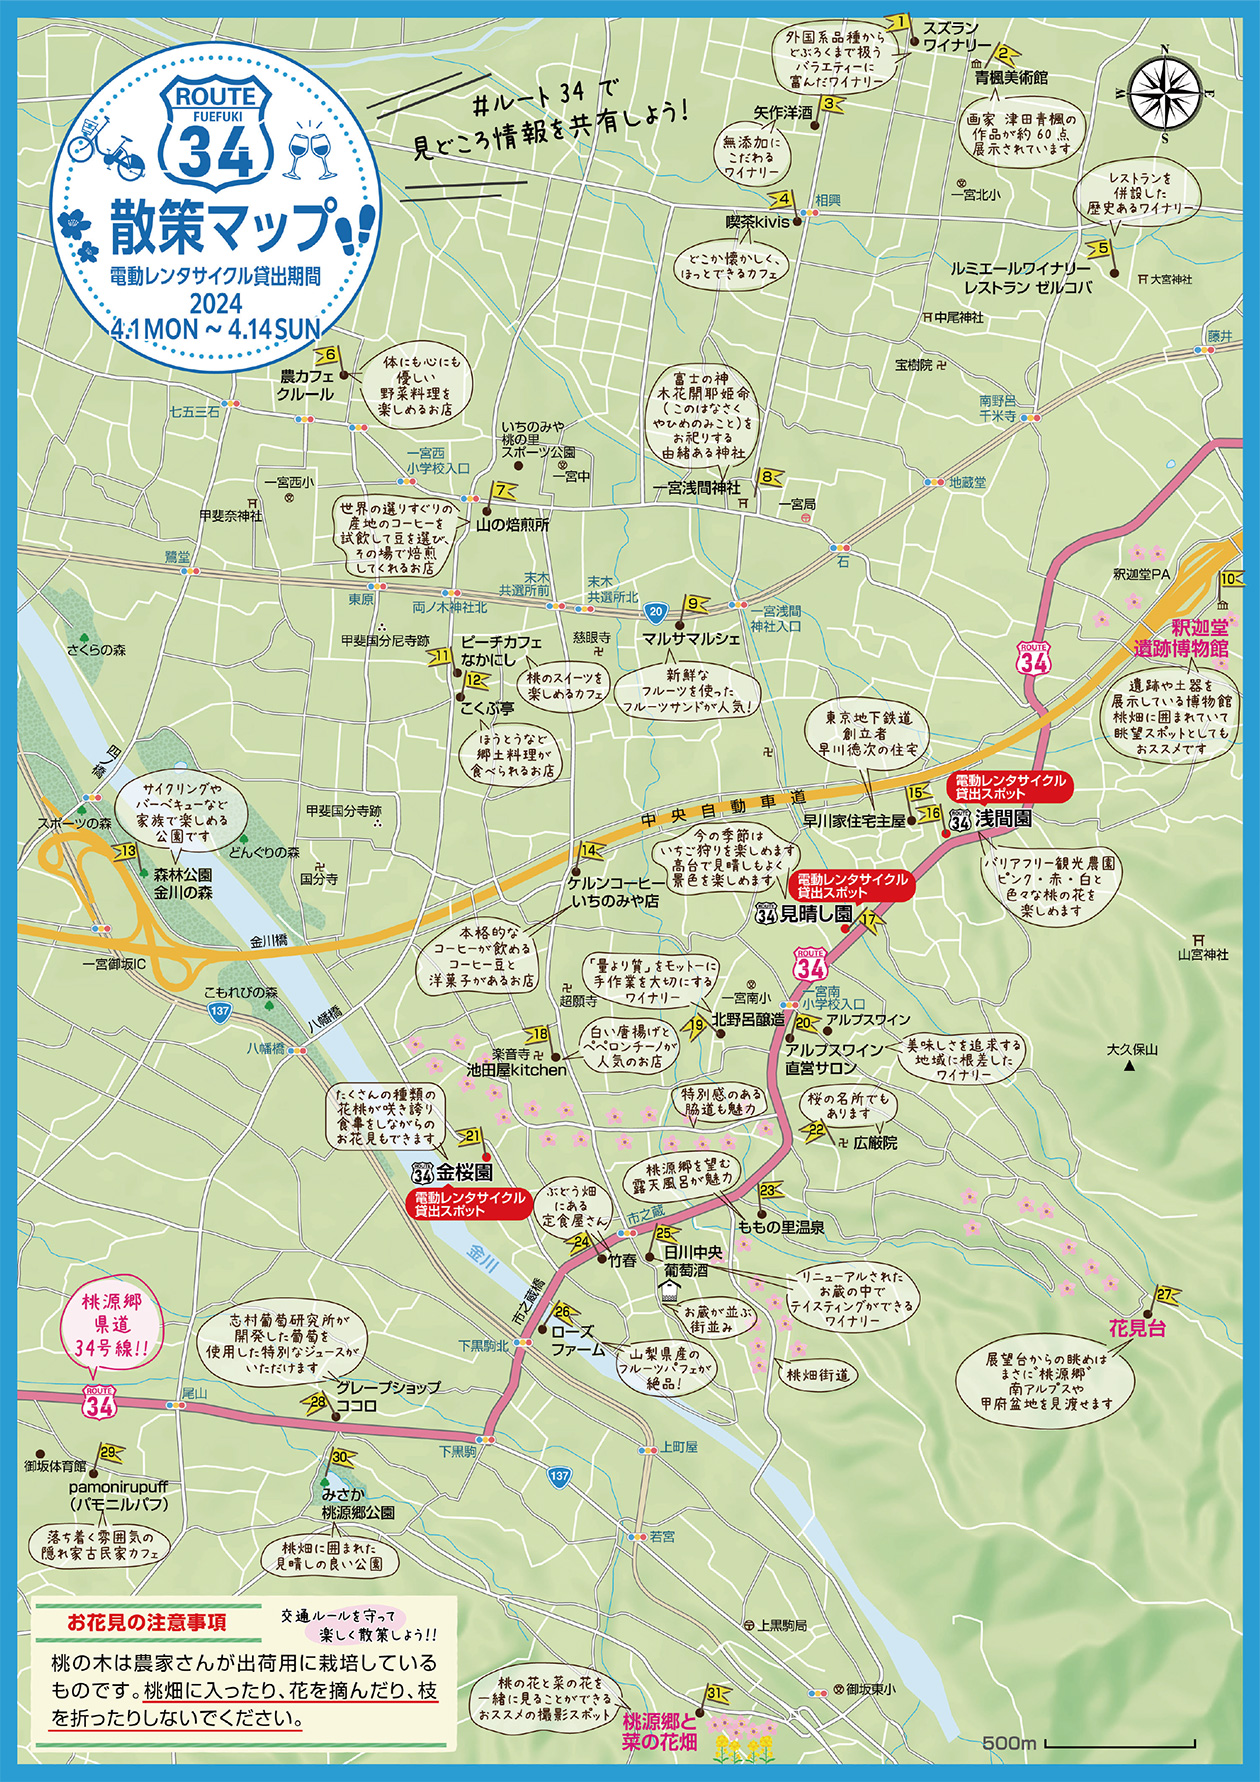 桃源峡 ROUTE 34 乘车&步行区域地图